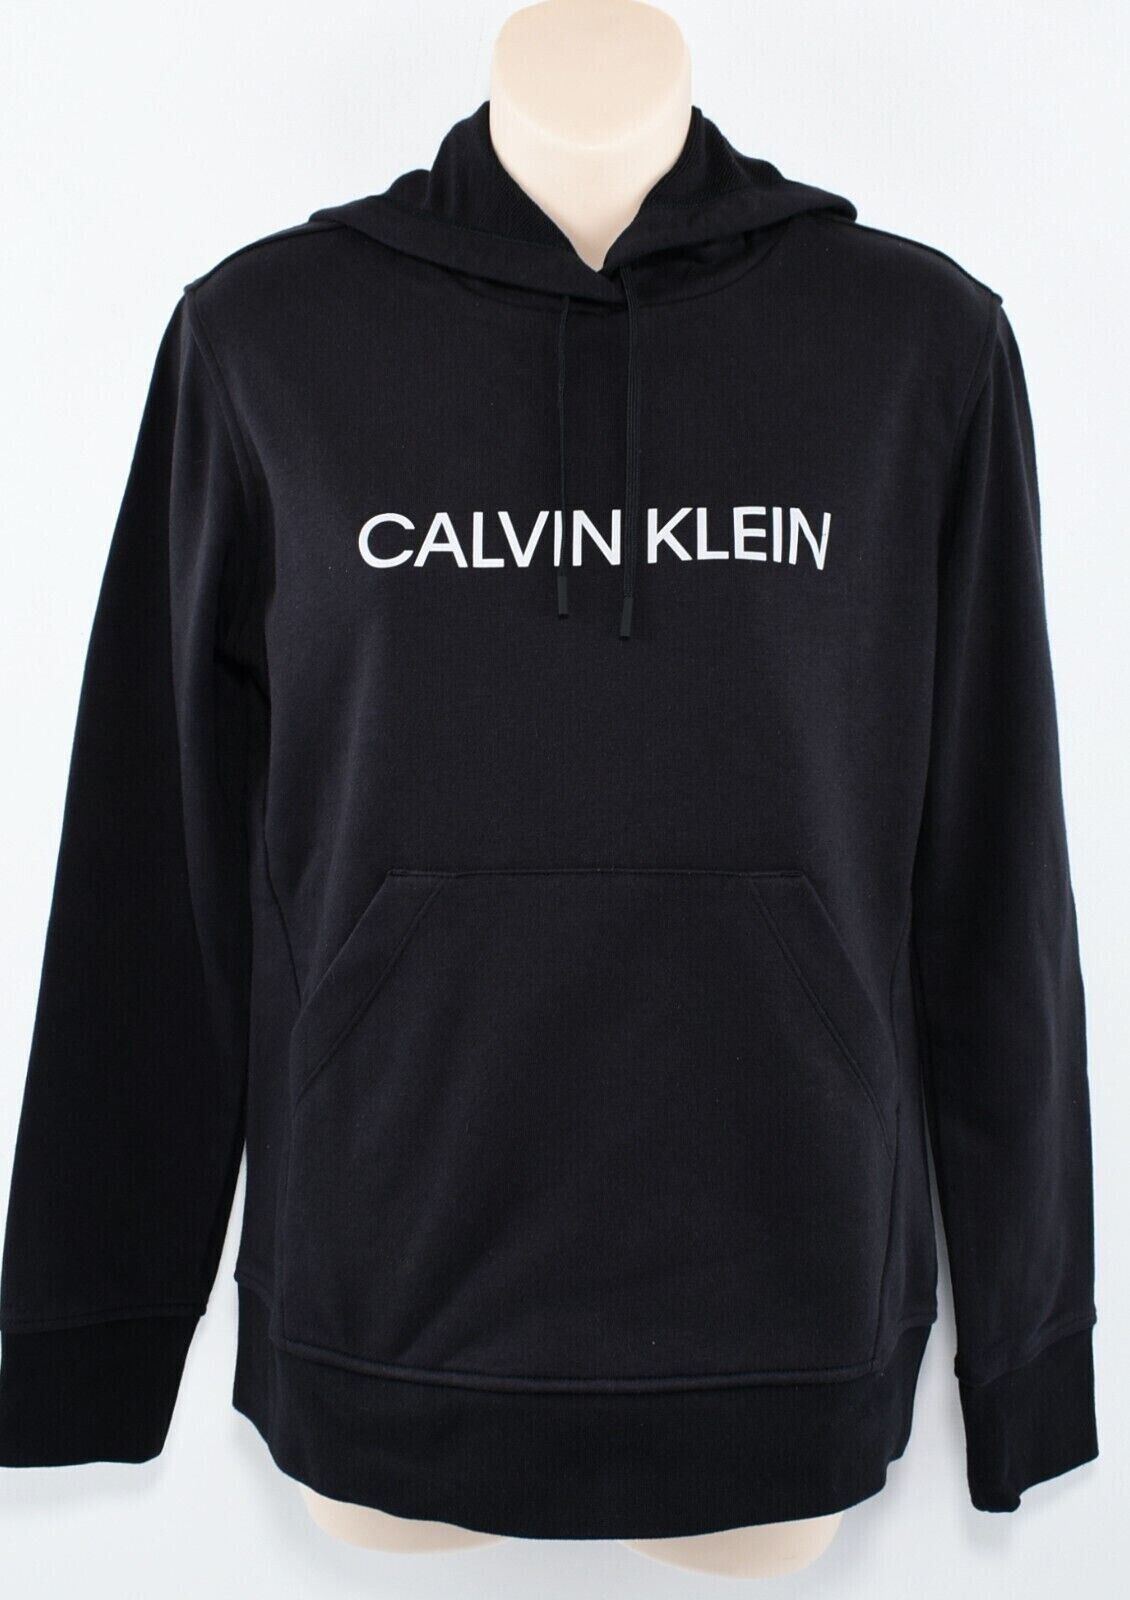 CALVIN KLEIN Performance Womens Hoodie, Hooded Sweatshirt, Black size S /UK 10